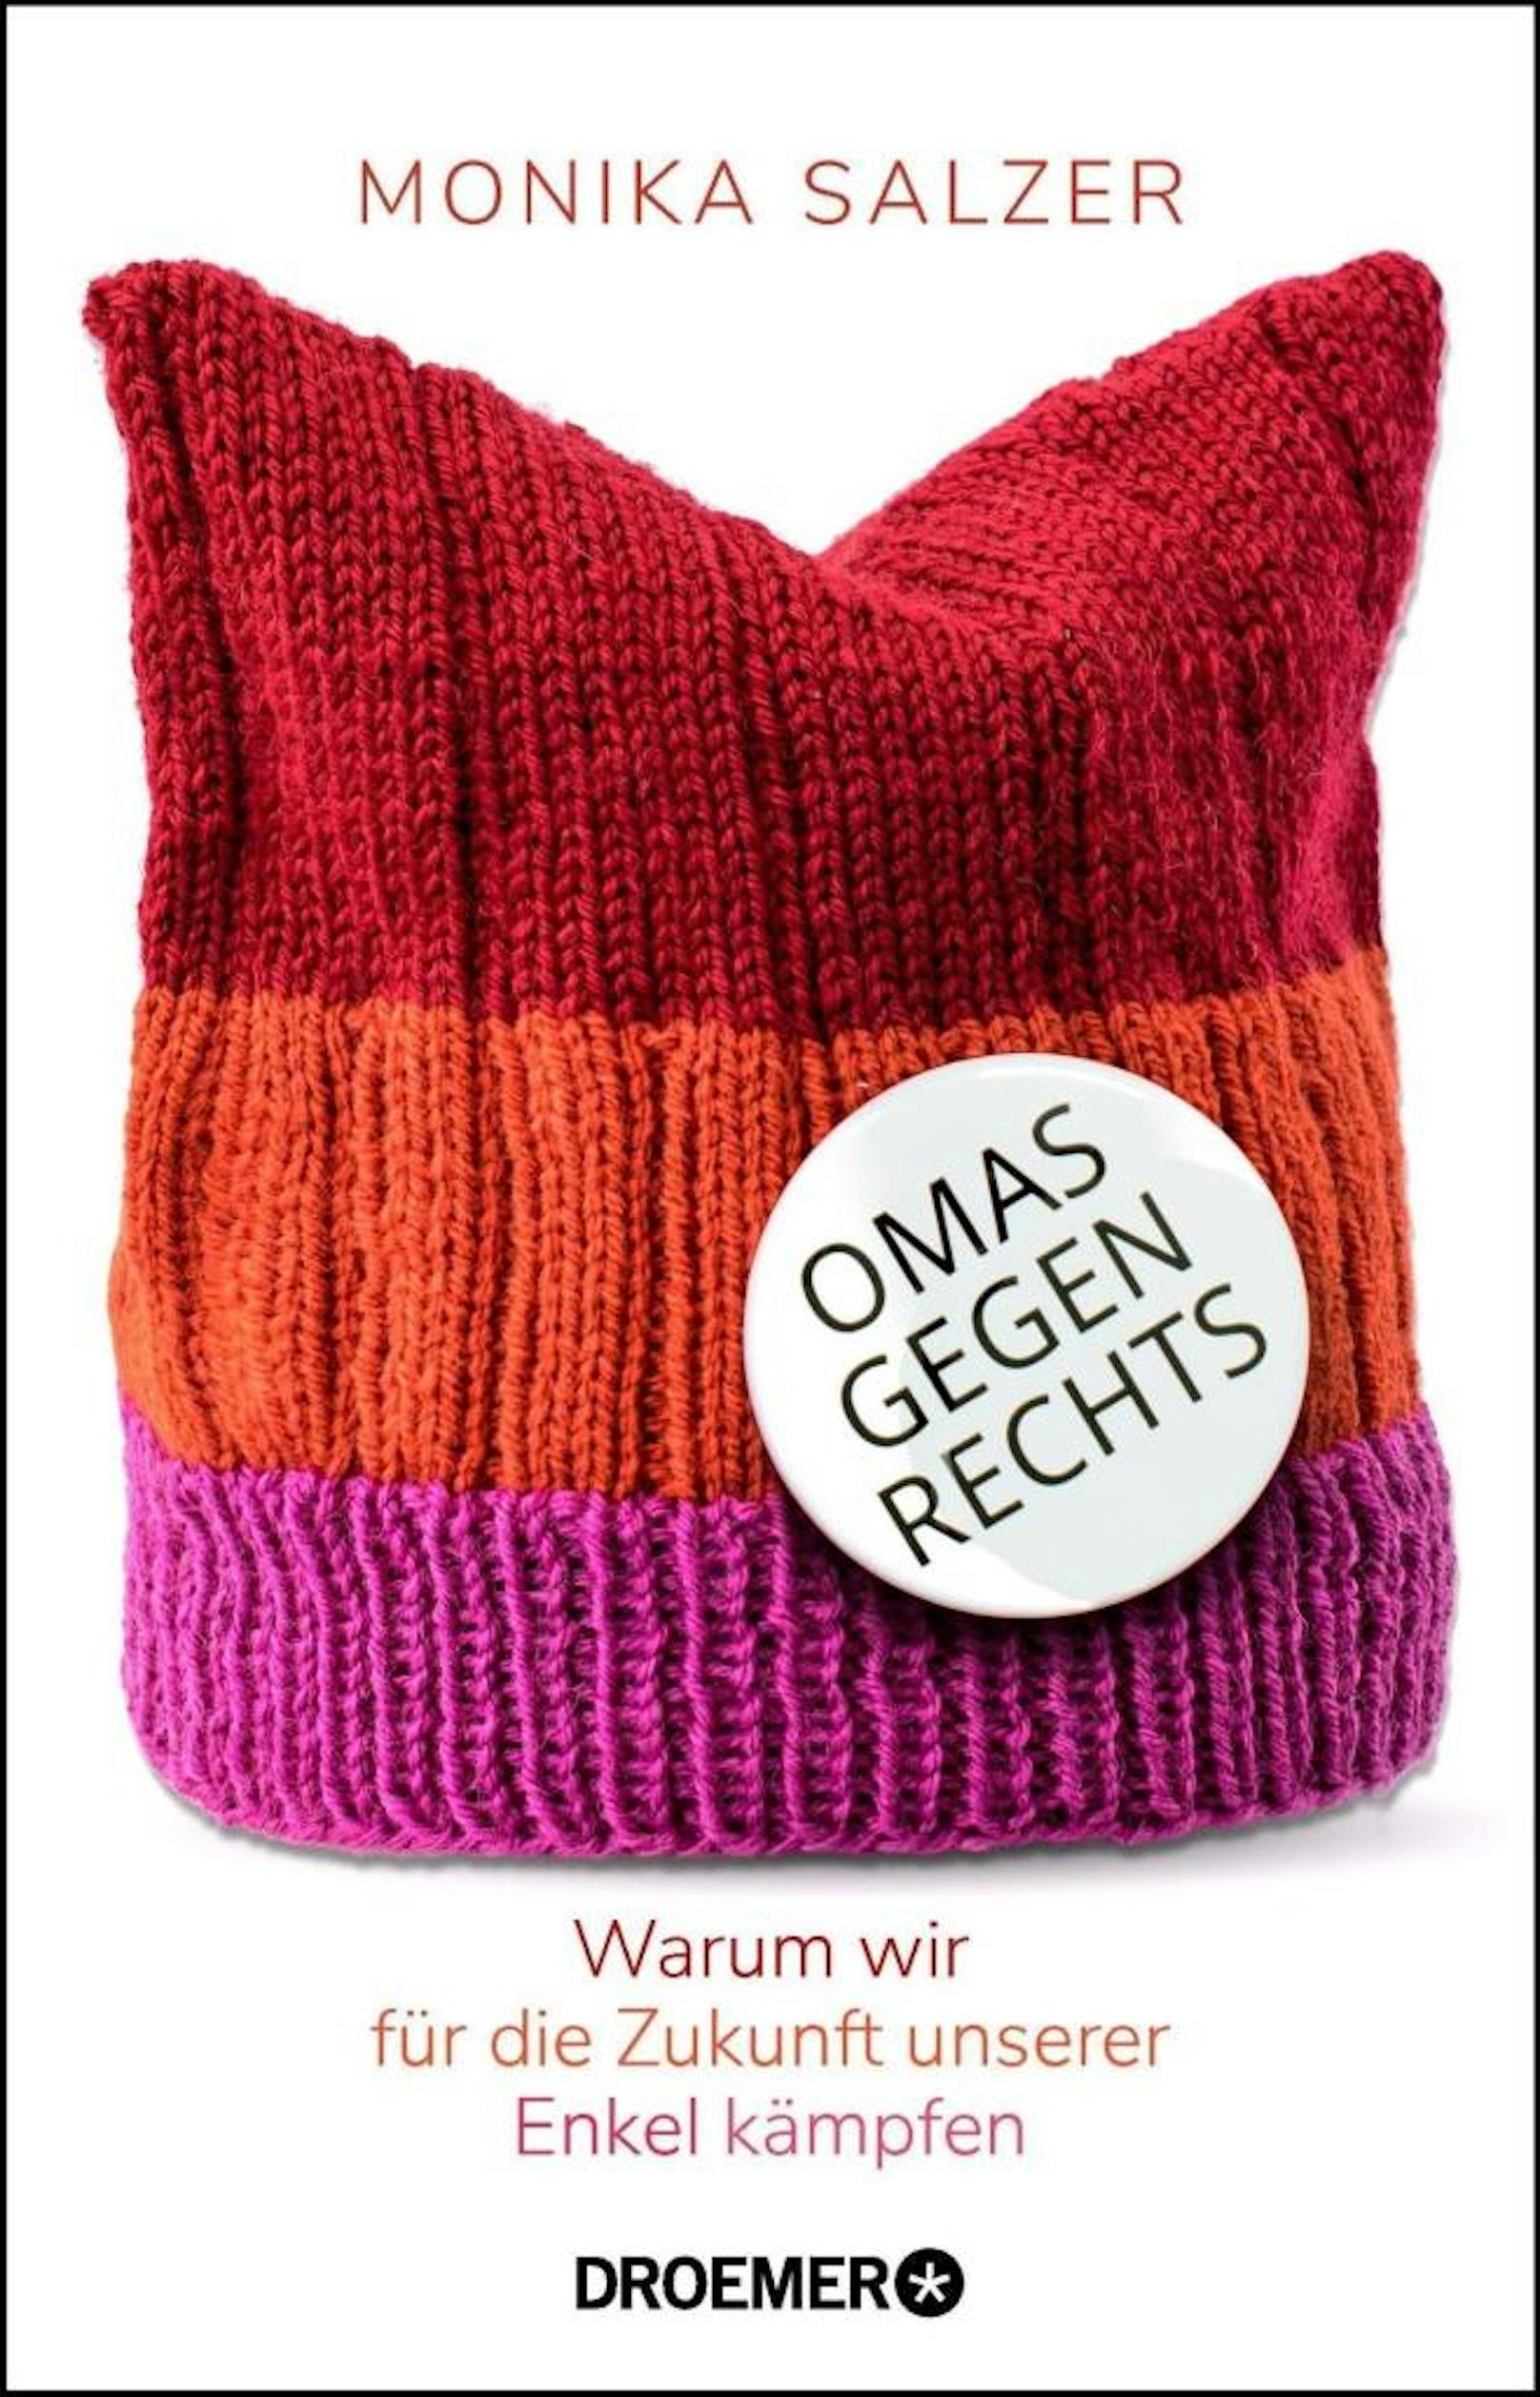 Das Buch "Omas gegen Rechts" von Monika Salzer kann bei uns gewonnen werden. (Credit: Droemer Knaur Verlag)